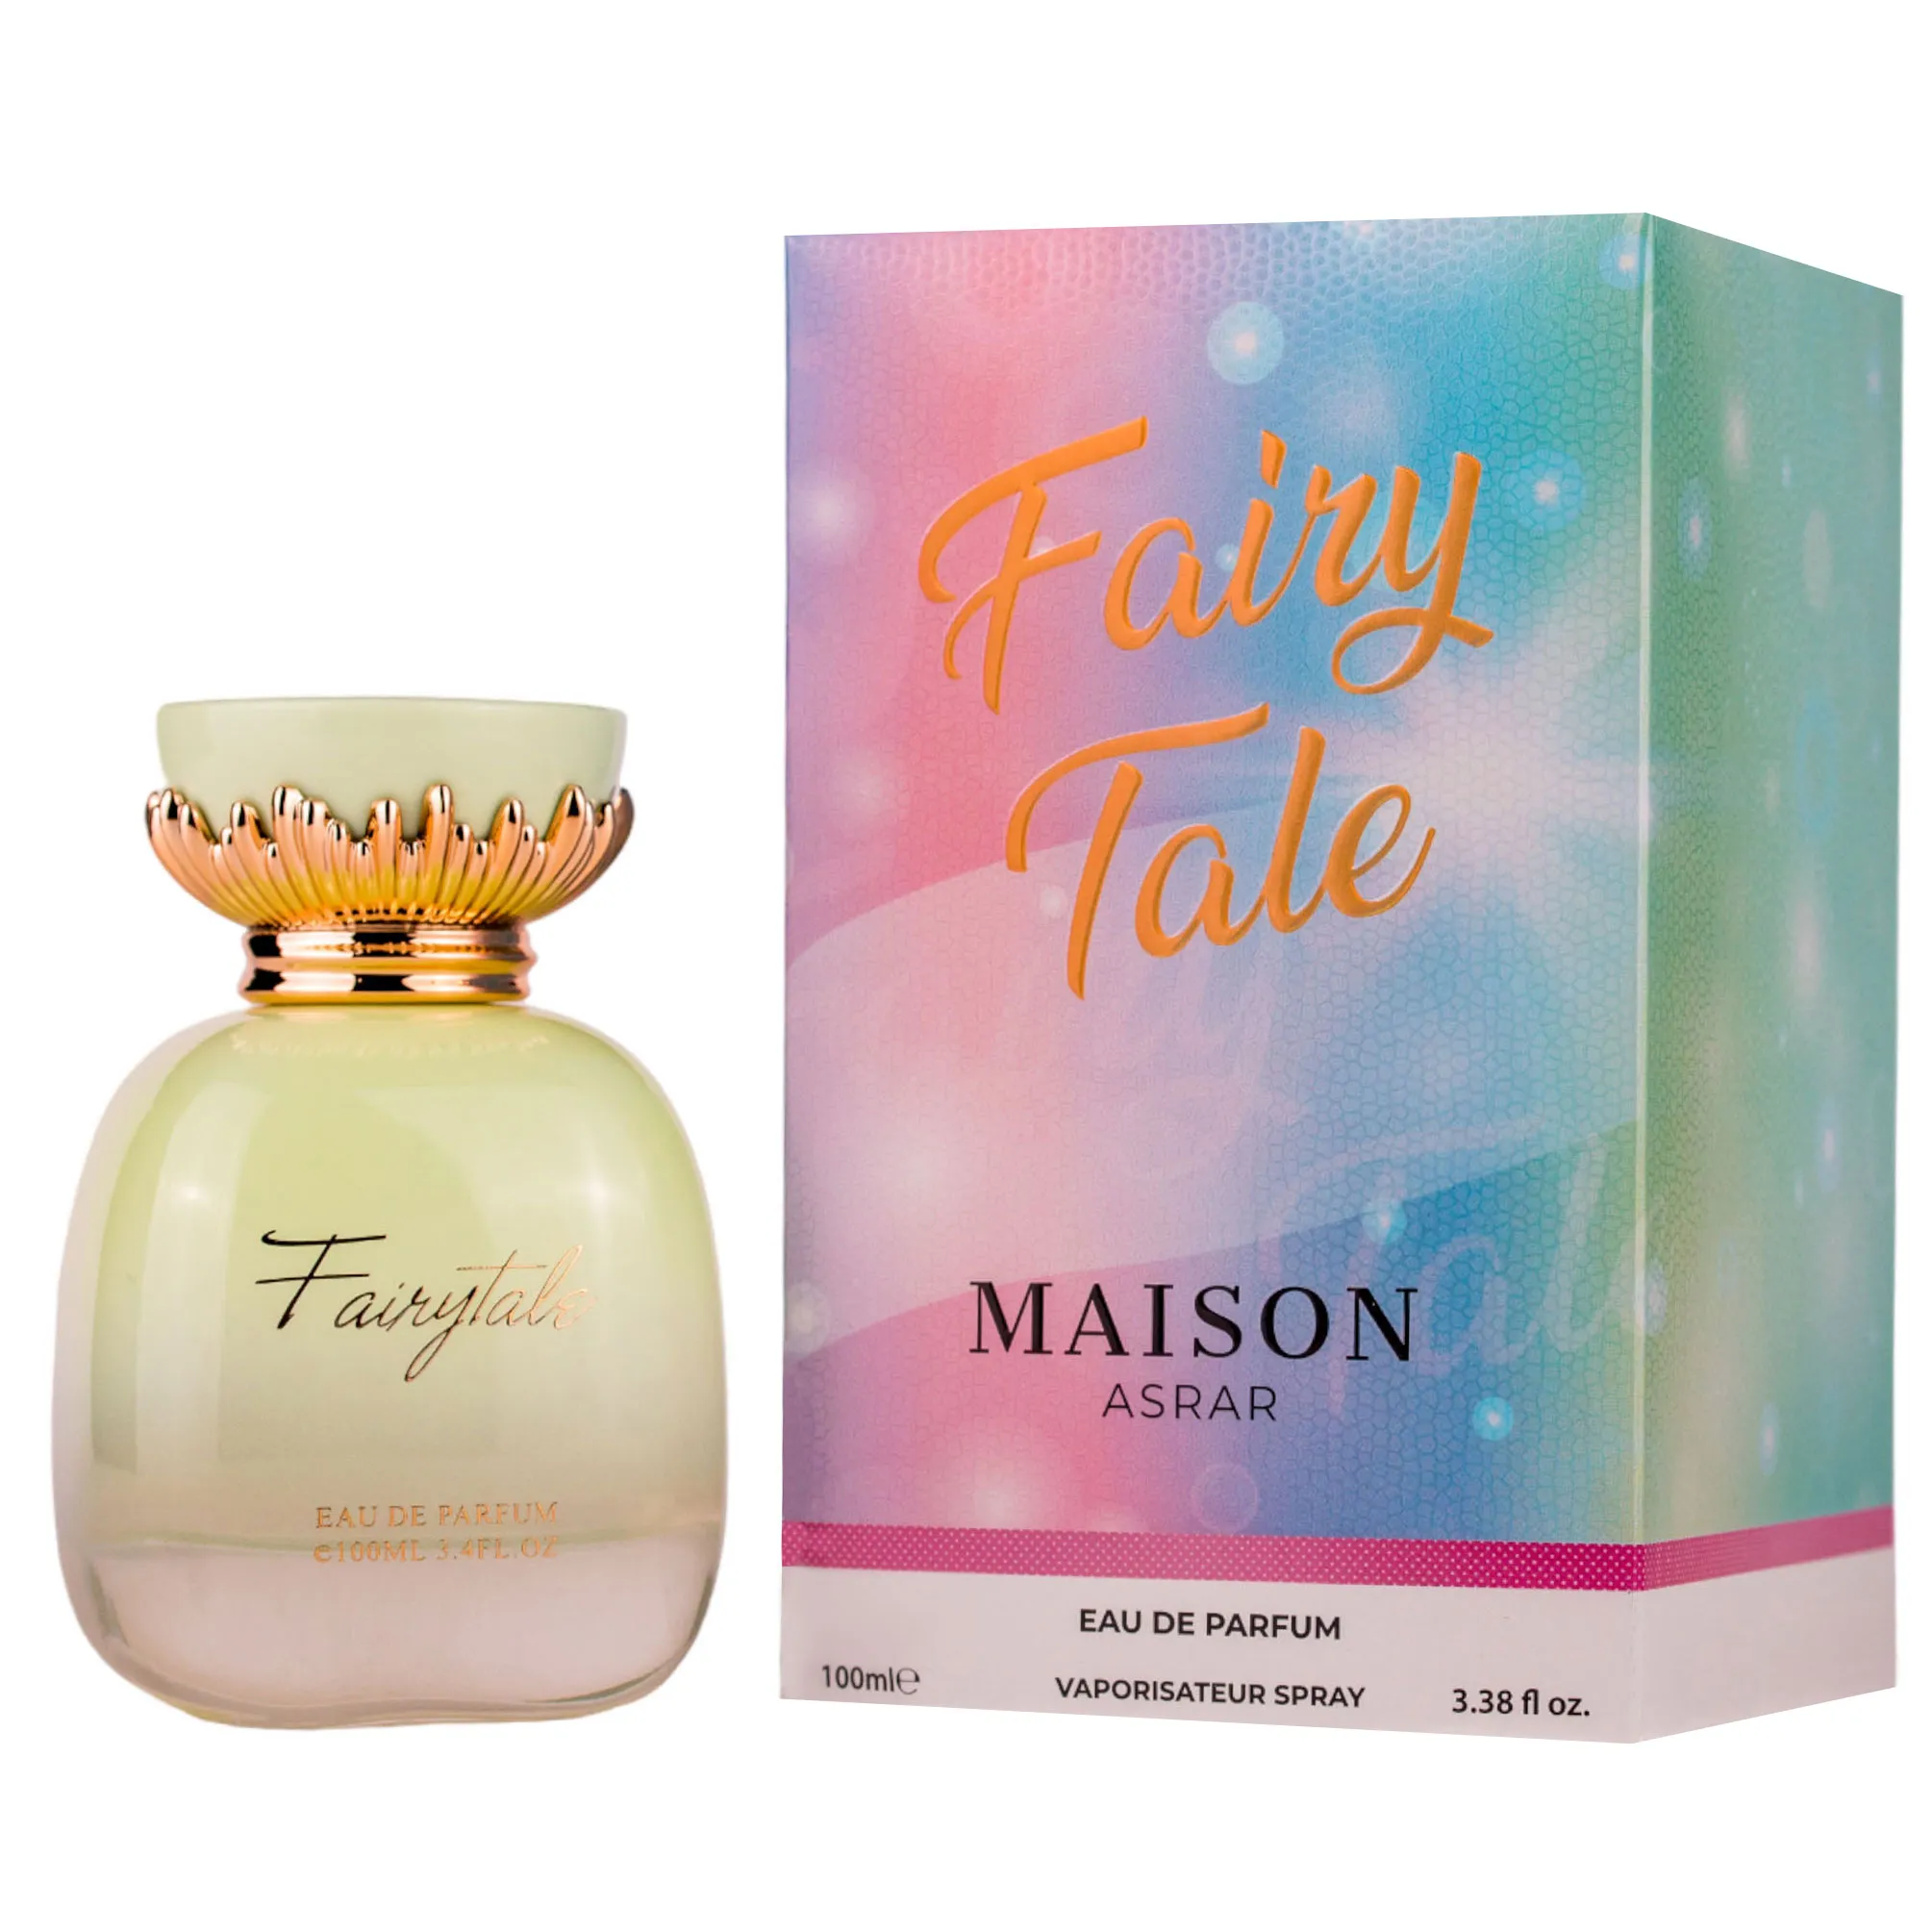 Fantasy Fairy Tale – Eau De Parfum